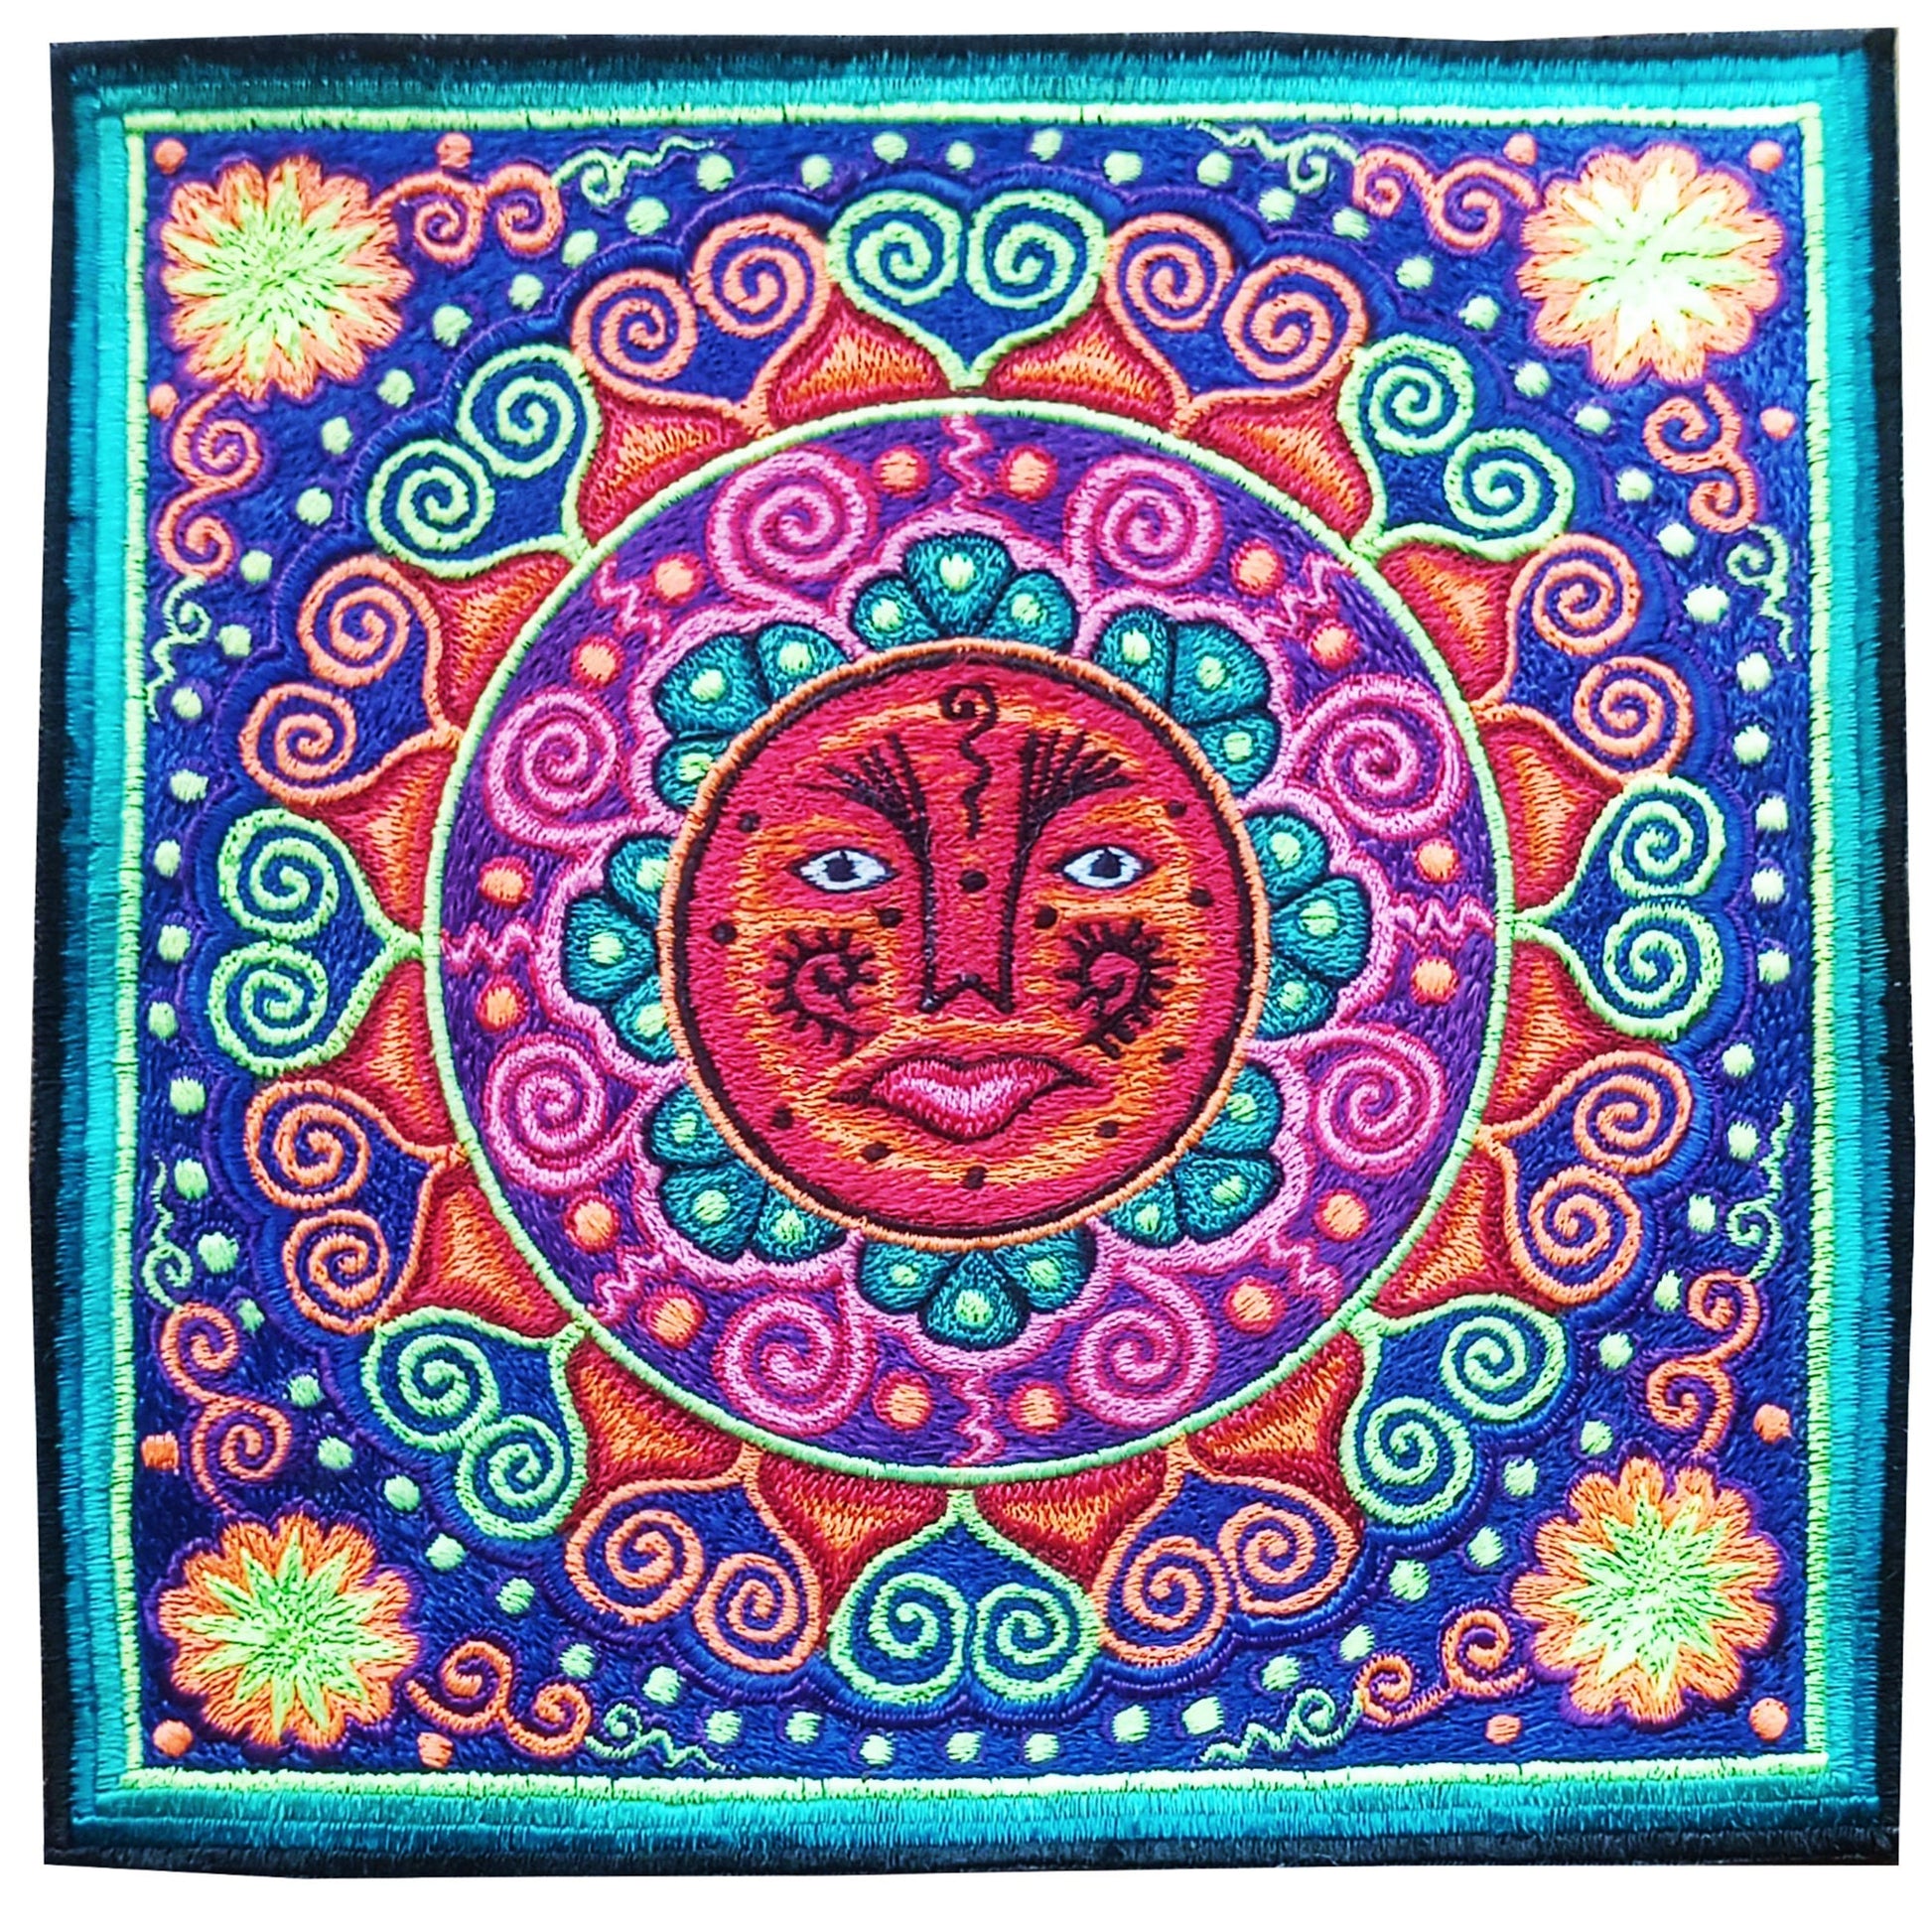 Huichol Sun Mandala embroidery art shaman artwork mescaline blacklight glowing magic cactus indigene decoration UV active shining